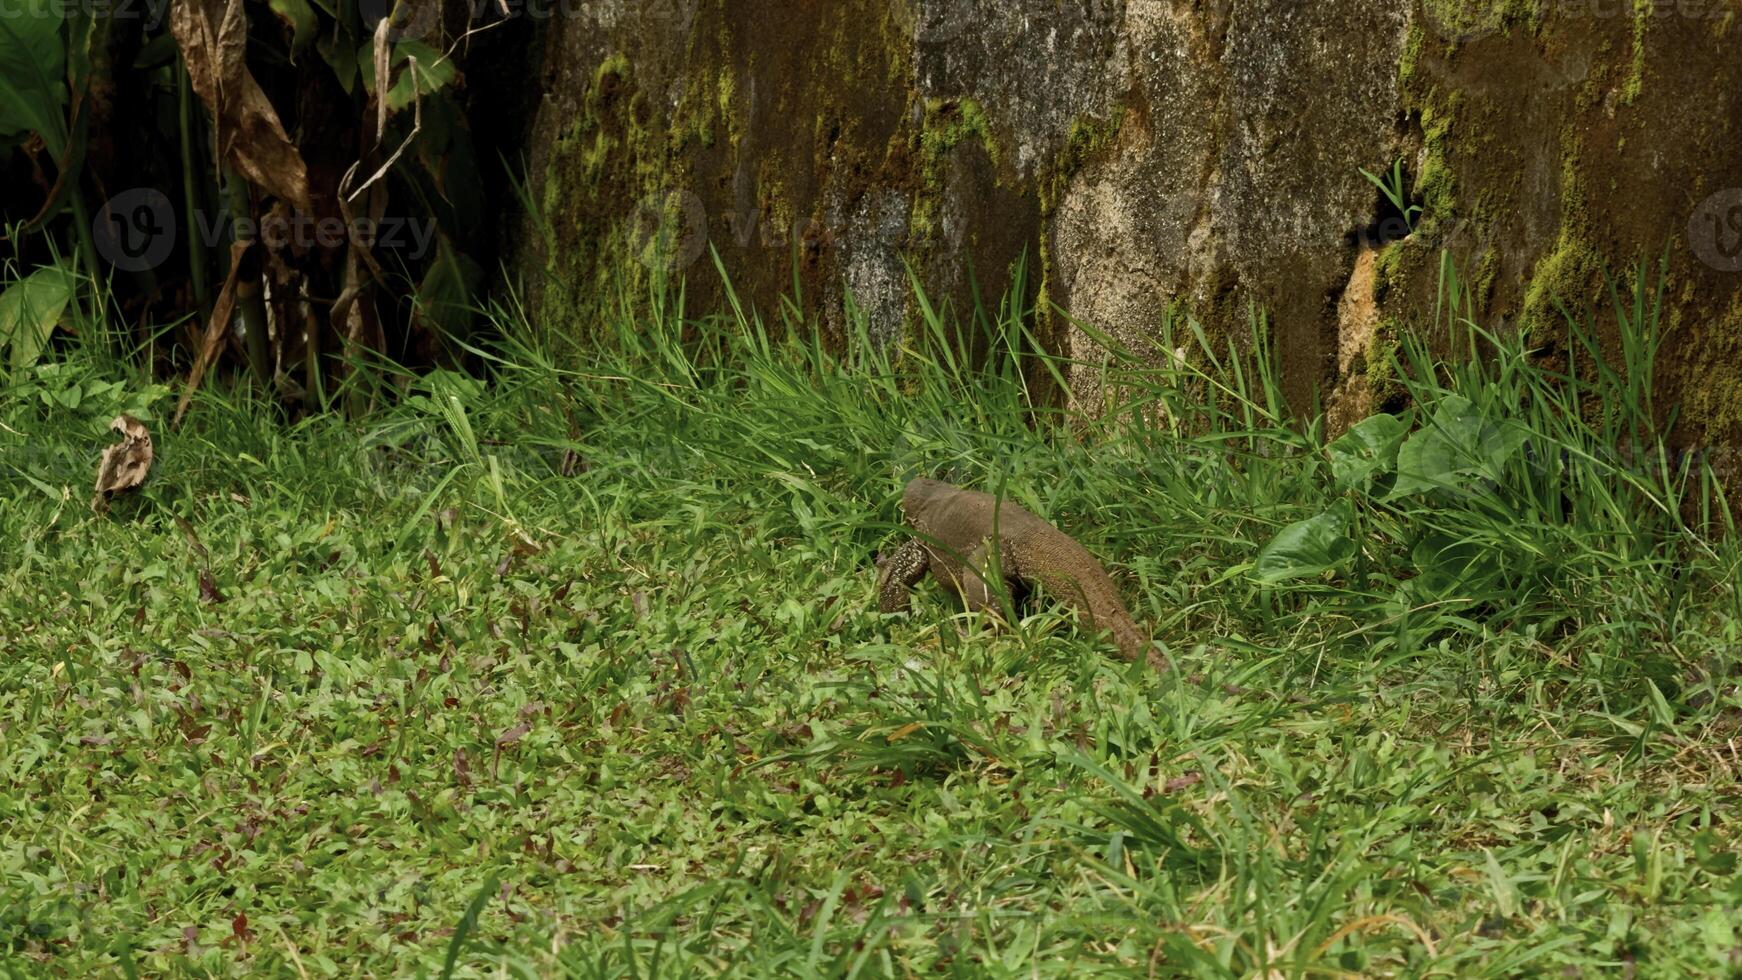 perigoso réptil varan em Prado perto árvore dentro nacional parque. Ação. conceito do animais selvagens. foto